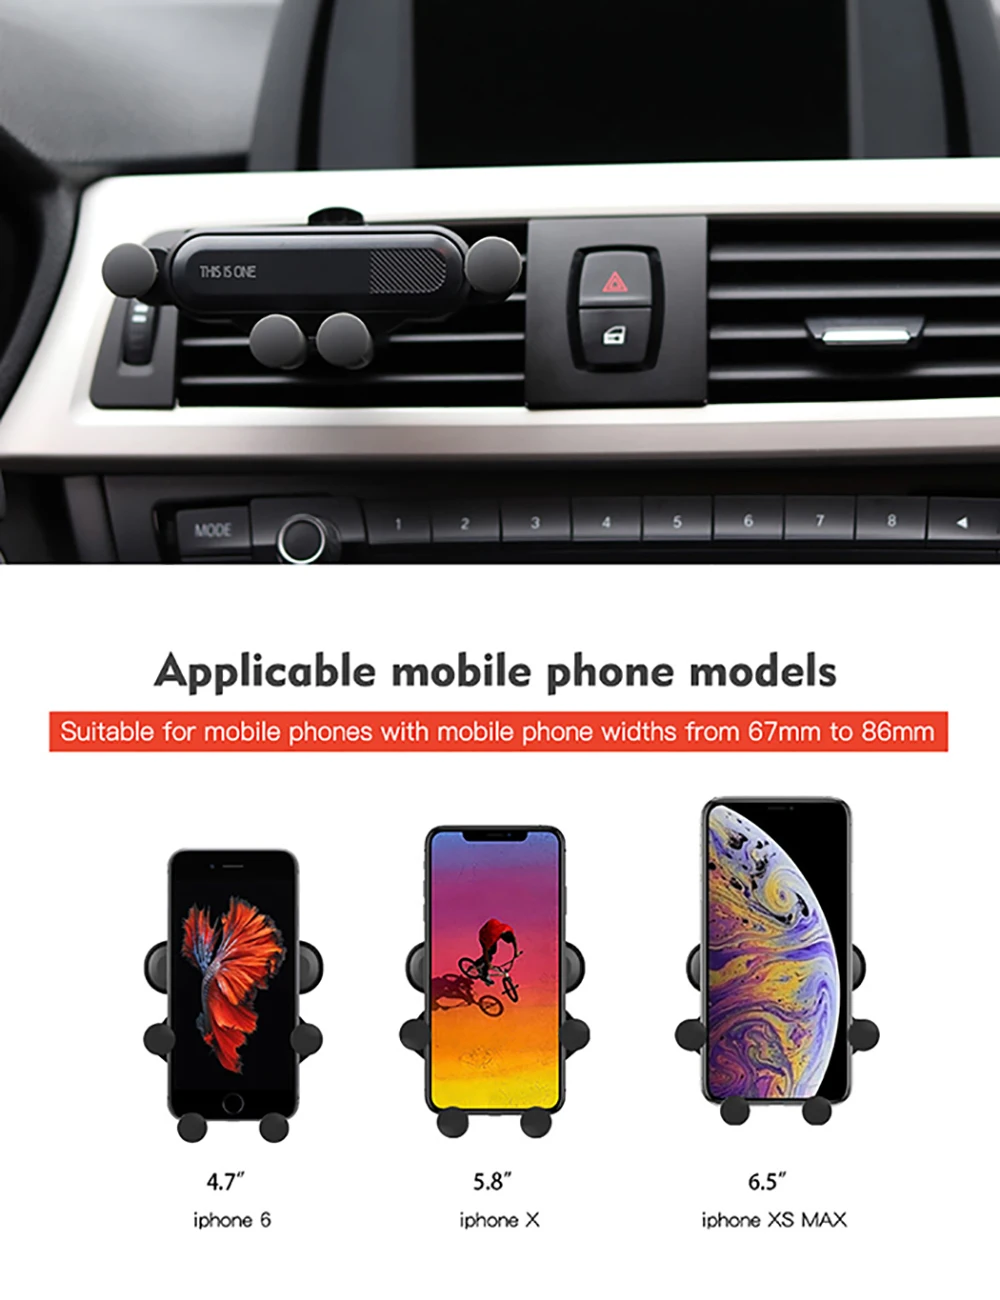 Универсальный автомобильный держатель телефона для телефона в Автомобиле вентиляционное отверстие подставка без магнитный держатель для мобильного телефона для iPhone смартфон Скоба-держатель